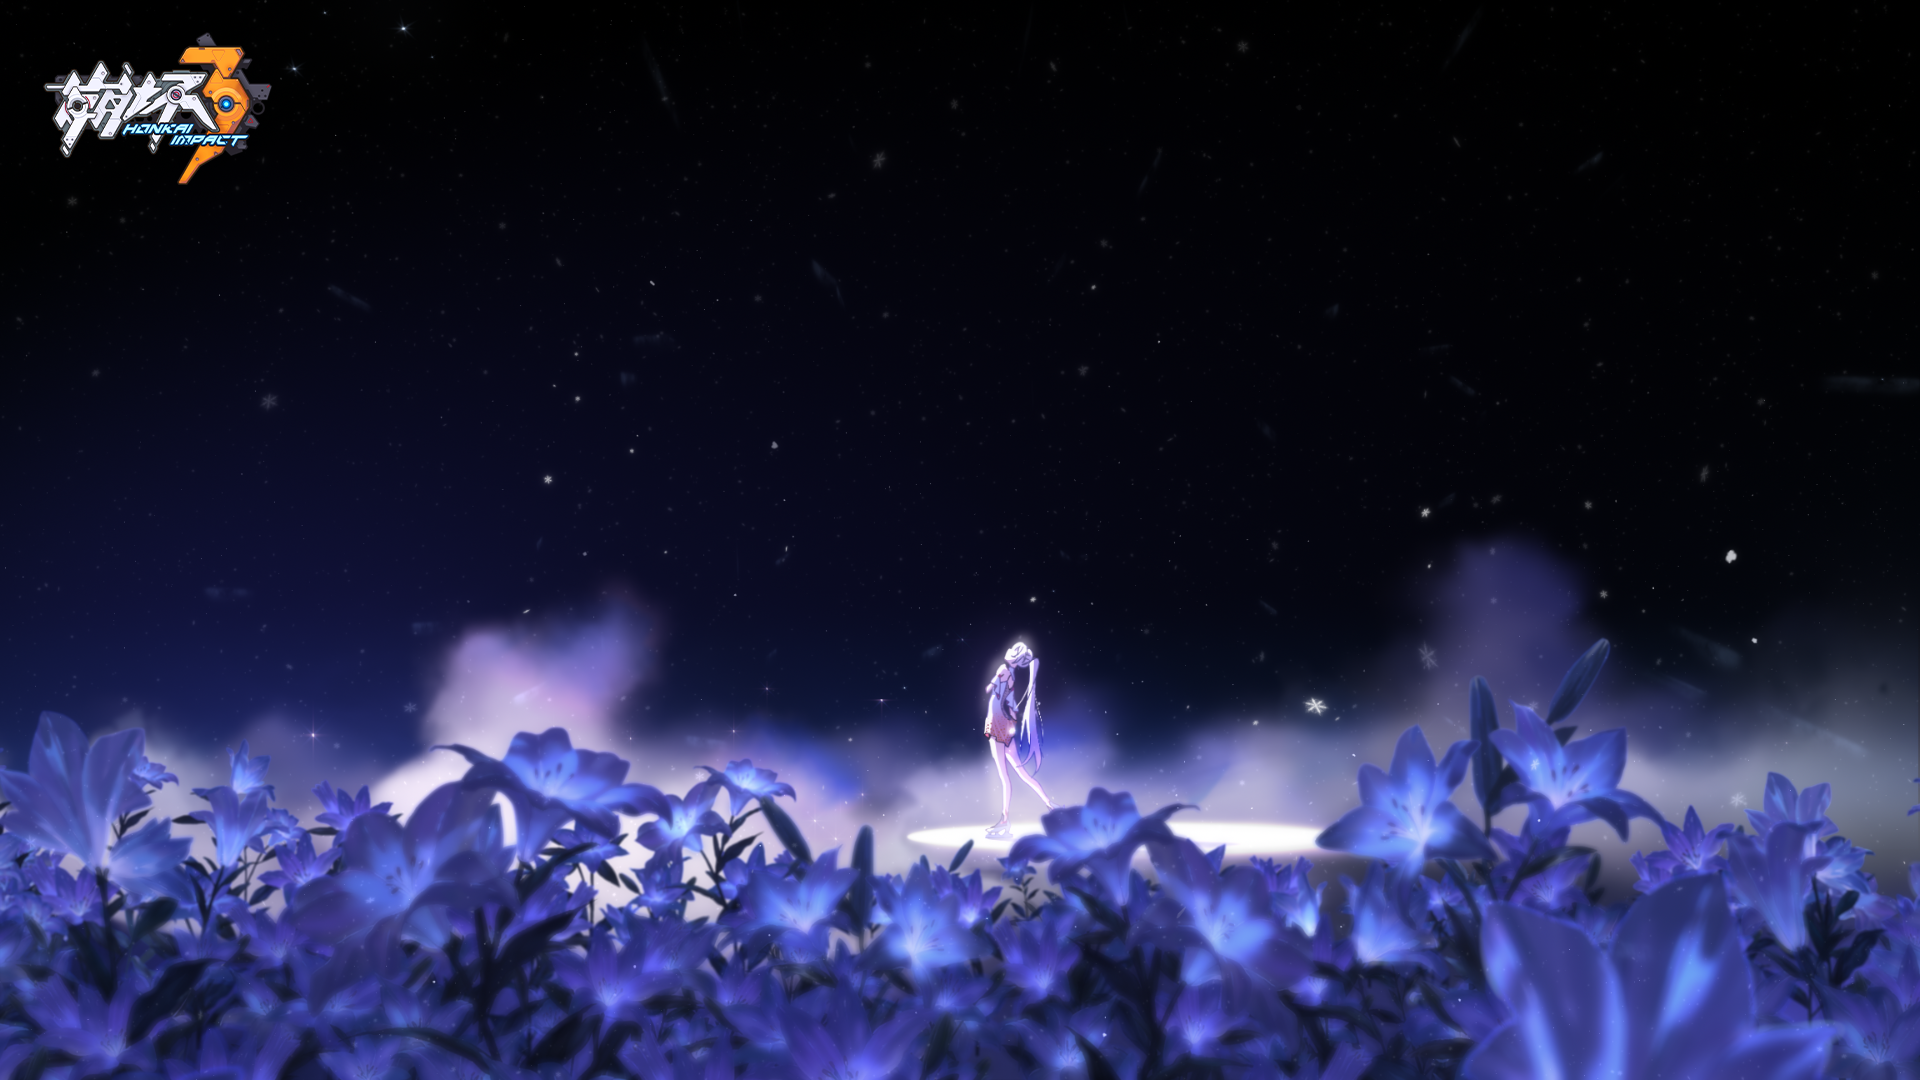 壁纸分享 |《崩坏3》概念动画短片「冬之记忆」精选壁纸